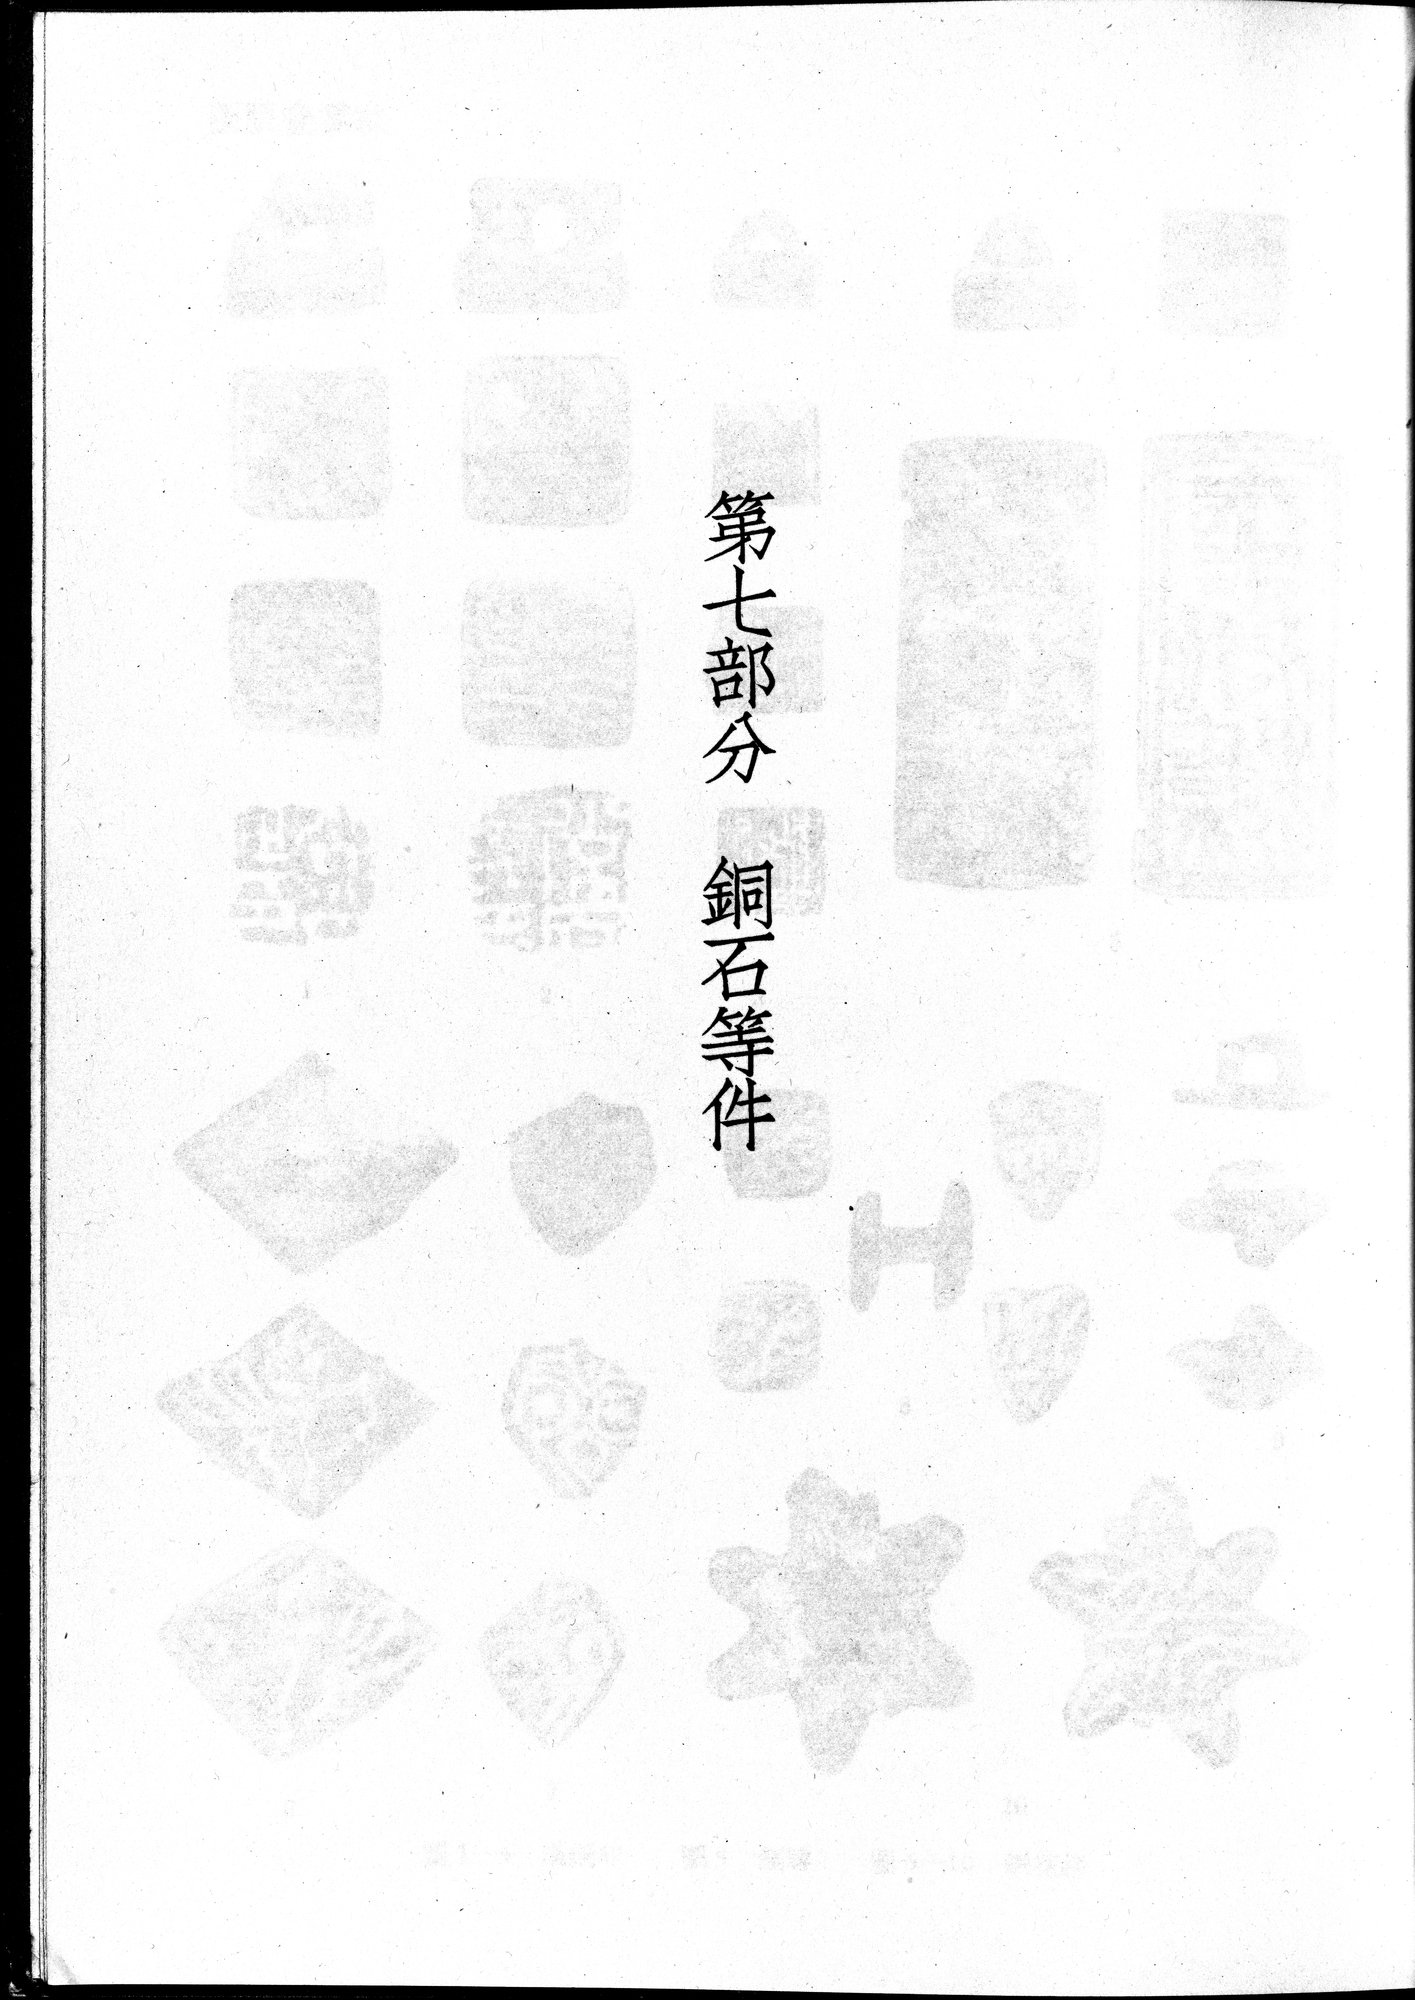 塔里木盆地考古記 : vol.1 / Page 347 (Grayscale High Resolution Image)